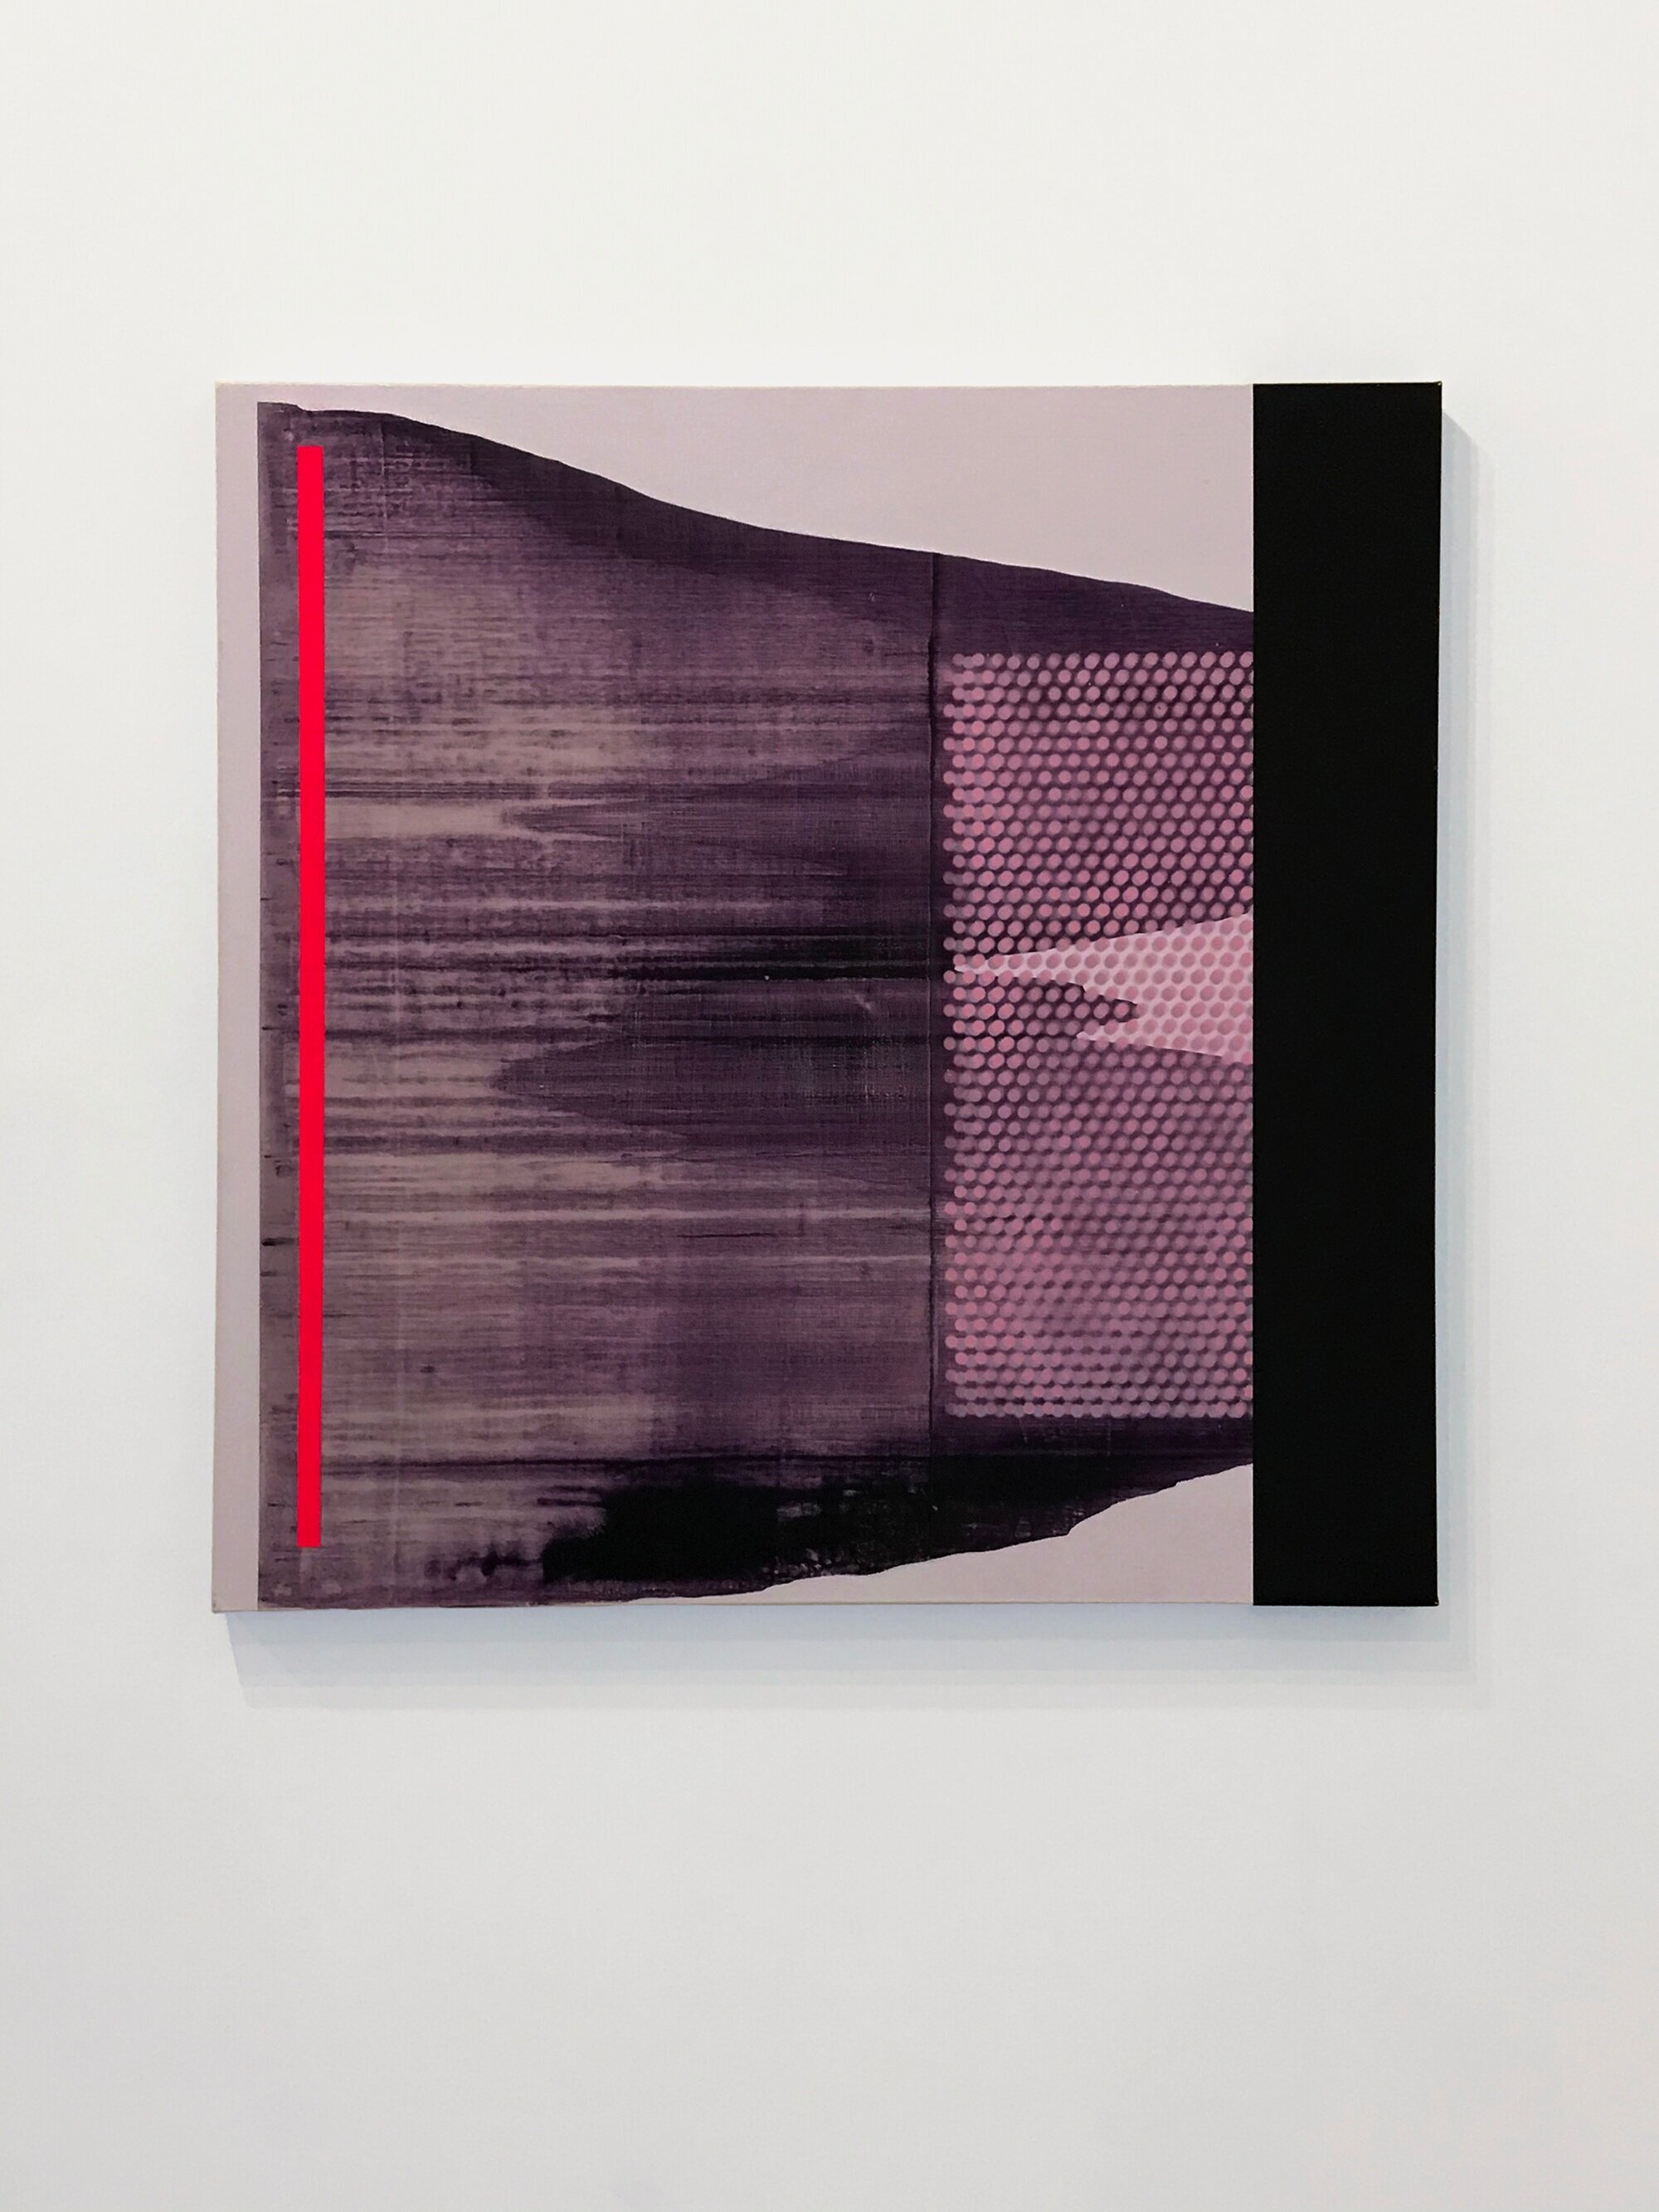 Max Gottlieb, 'Shift' 2020, 76x76cm, acrylic on canvas